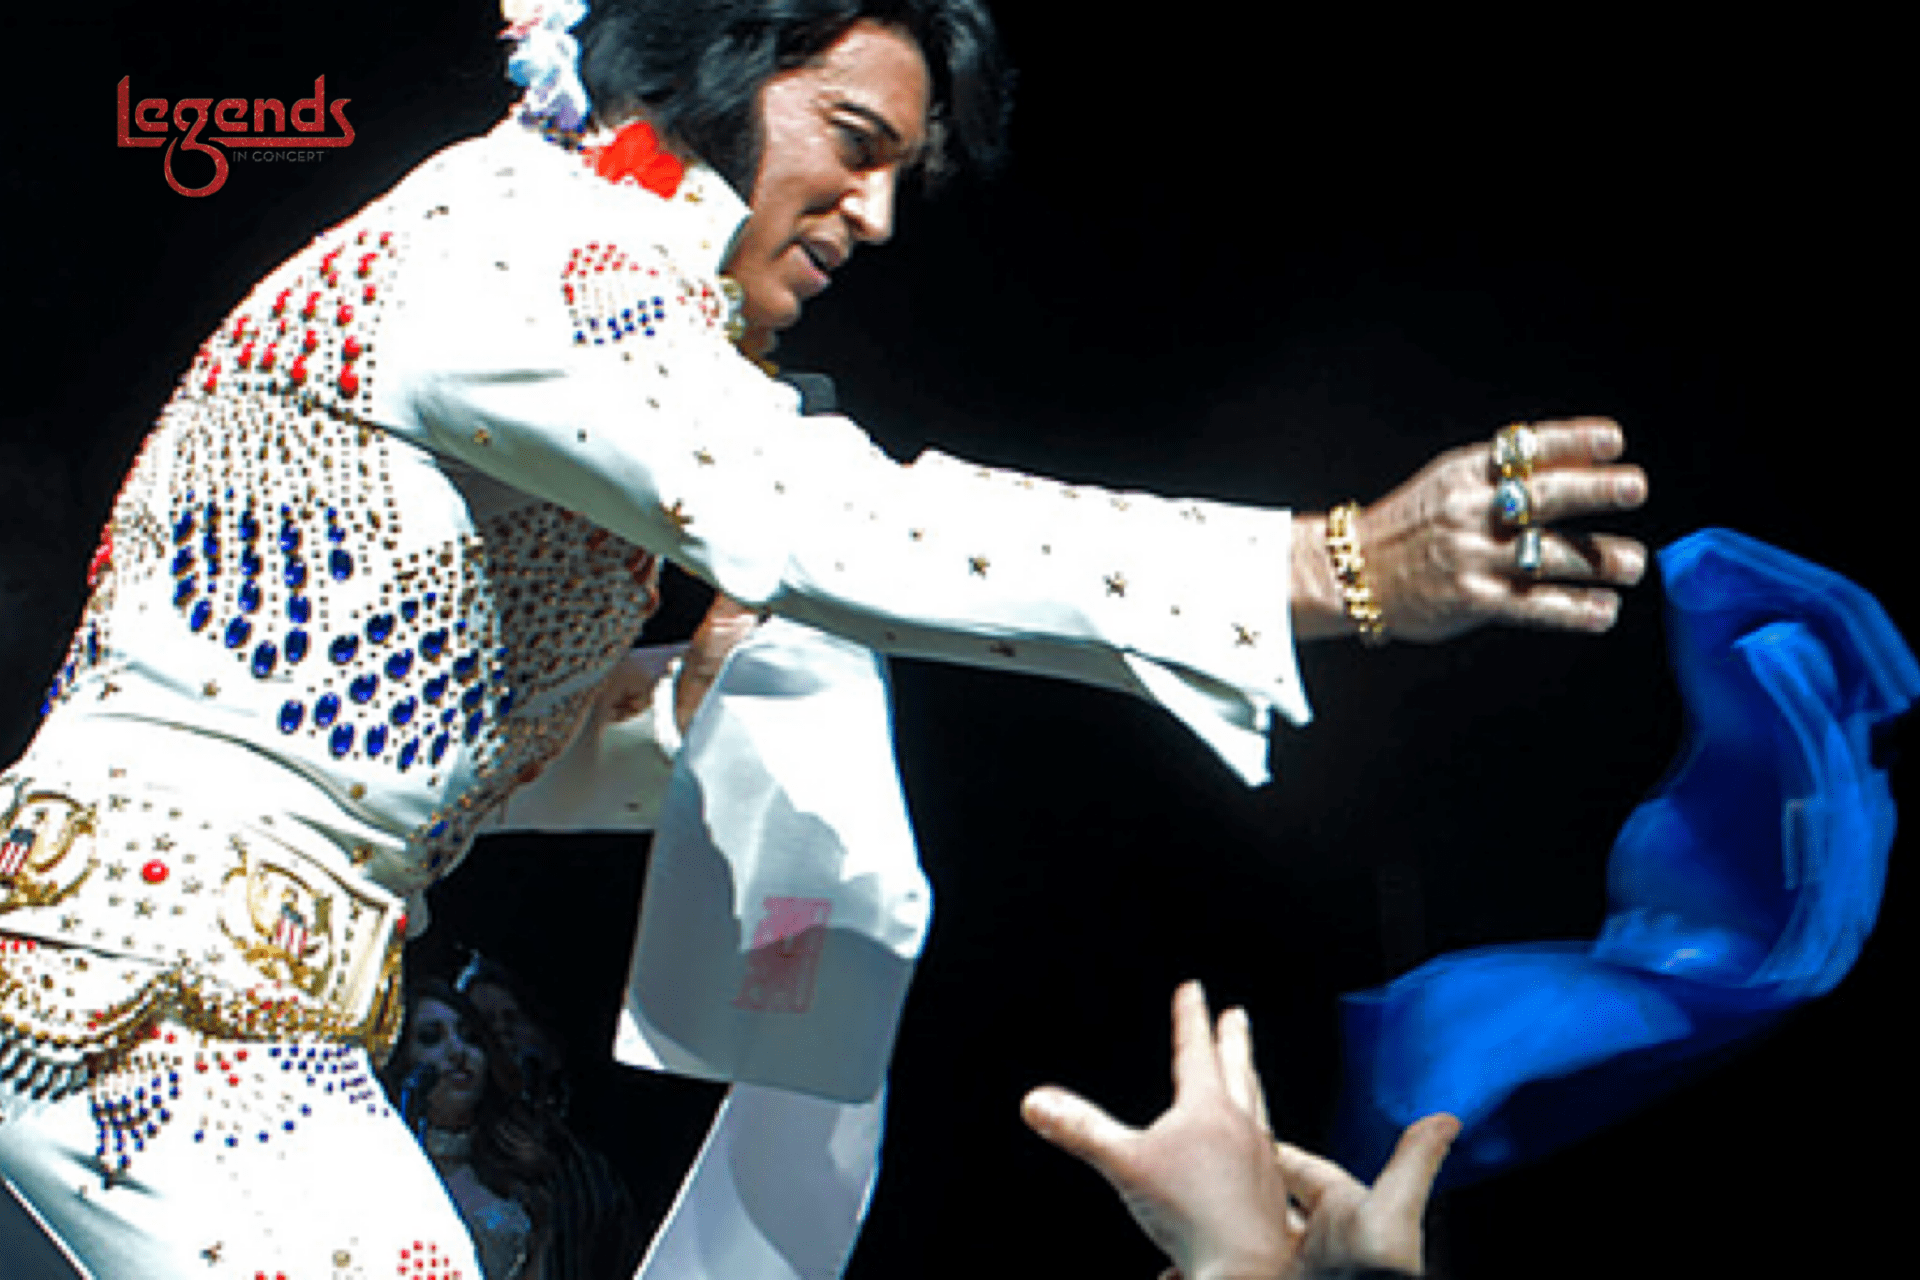 Legends in Concert Bill Cherry Tribute to Elvis Presley